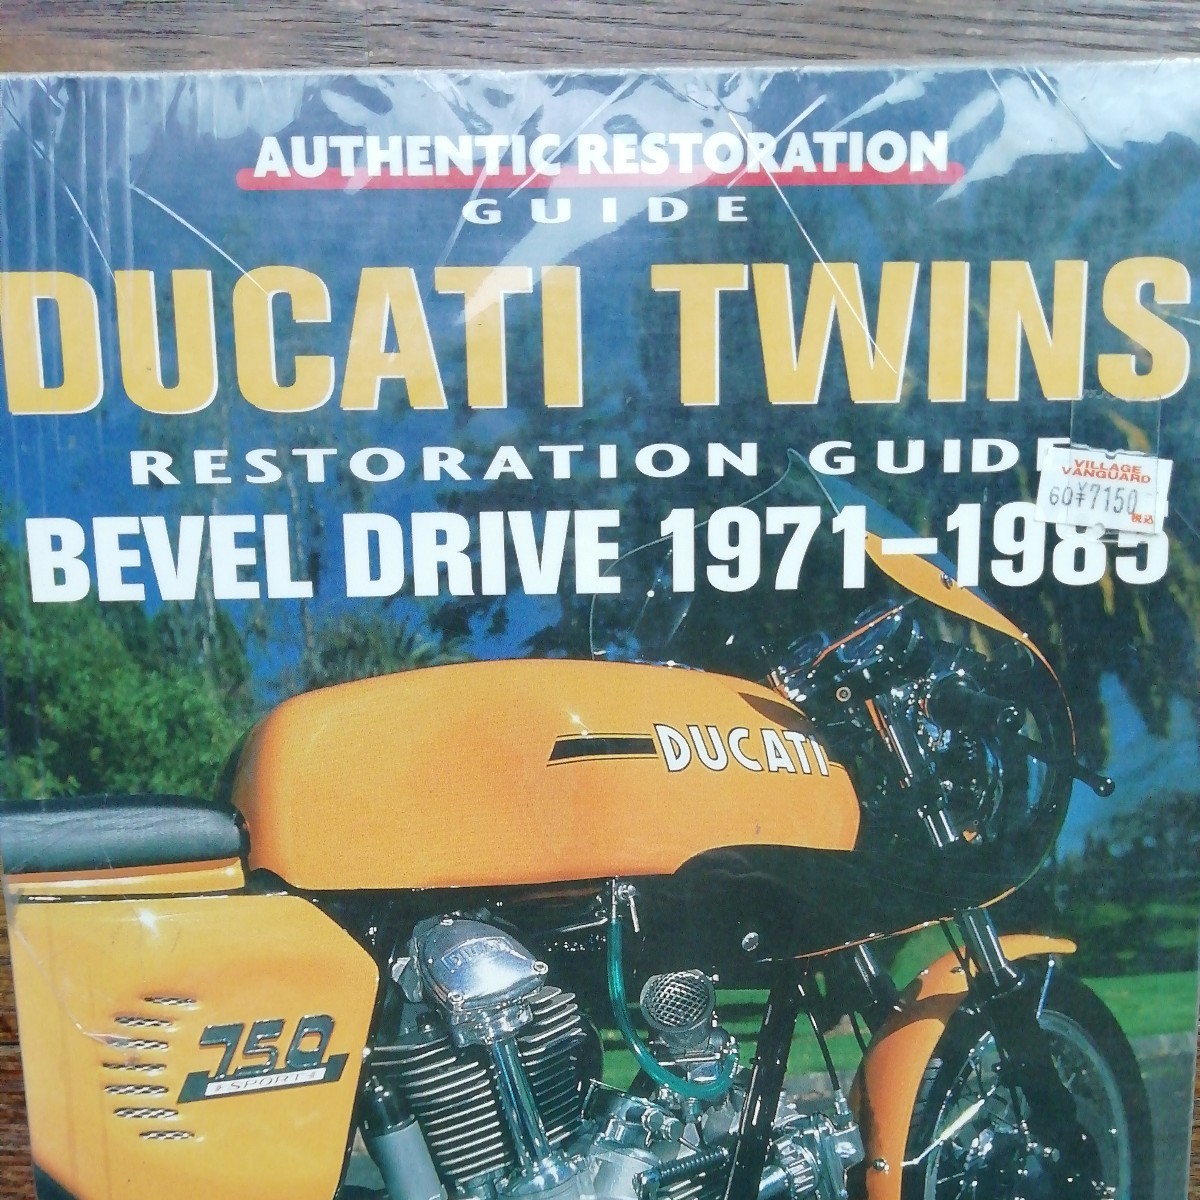  включая доставку! DUCATI TWINS restoration guide BEVEL DRIVE 1971-1985 Ducati. сервисная книжка.. объект марка машины. фотография ... просьба проверить. распроданный книга@ иностранная книга 